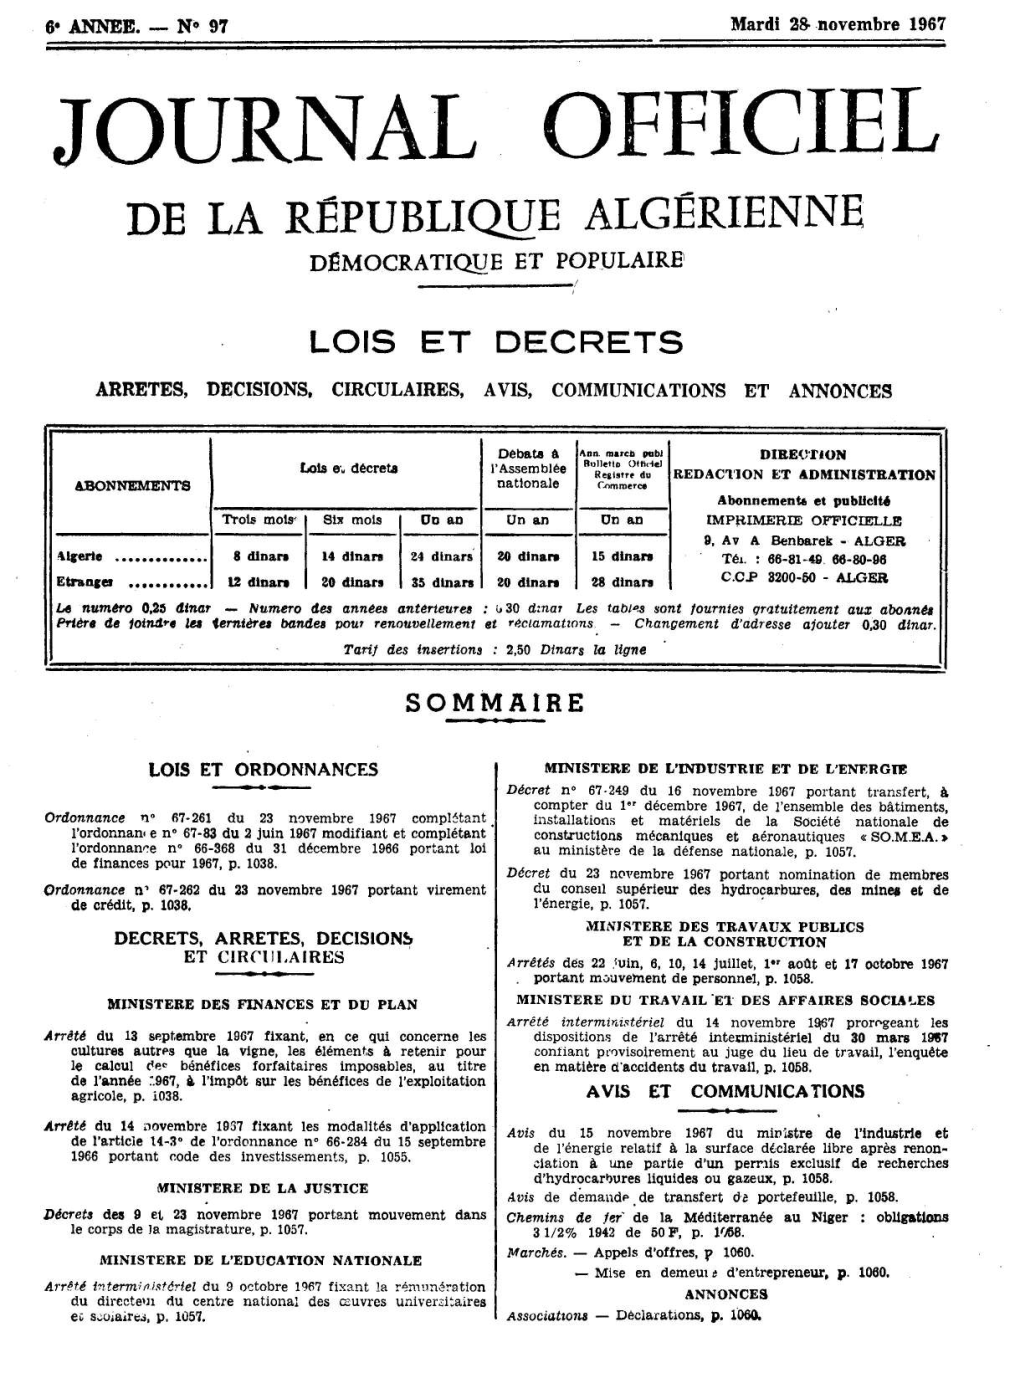 JOURNAL OFFICIEL DE LA REPUBLIQUE ALGERIENNE DEMOCRATIQUE ET POPULAIRE F T LOIS ET DECRETS